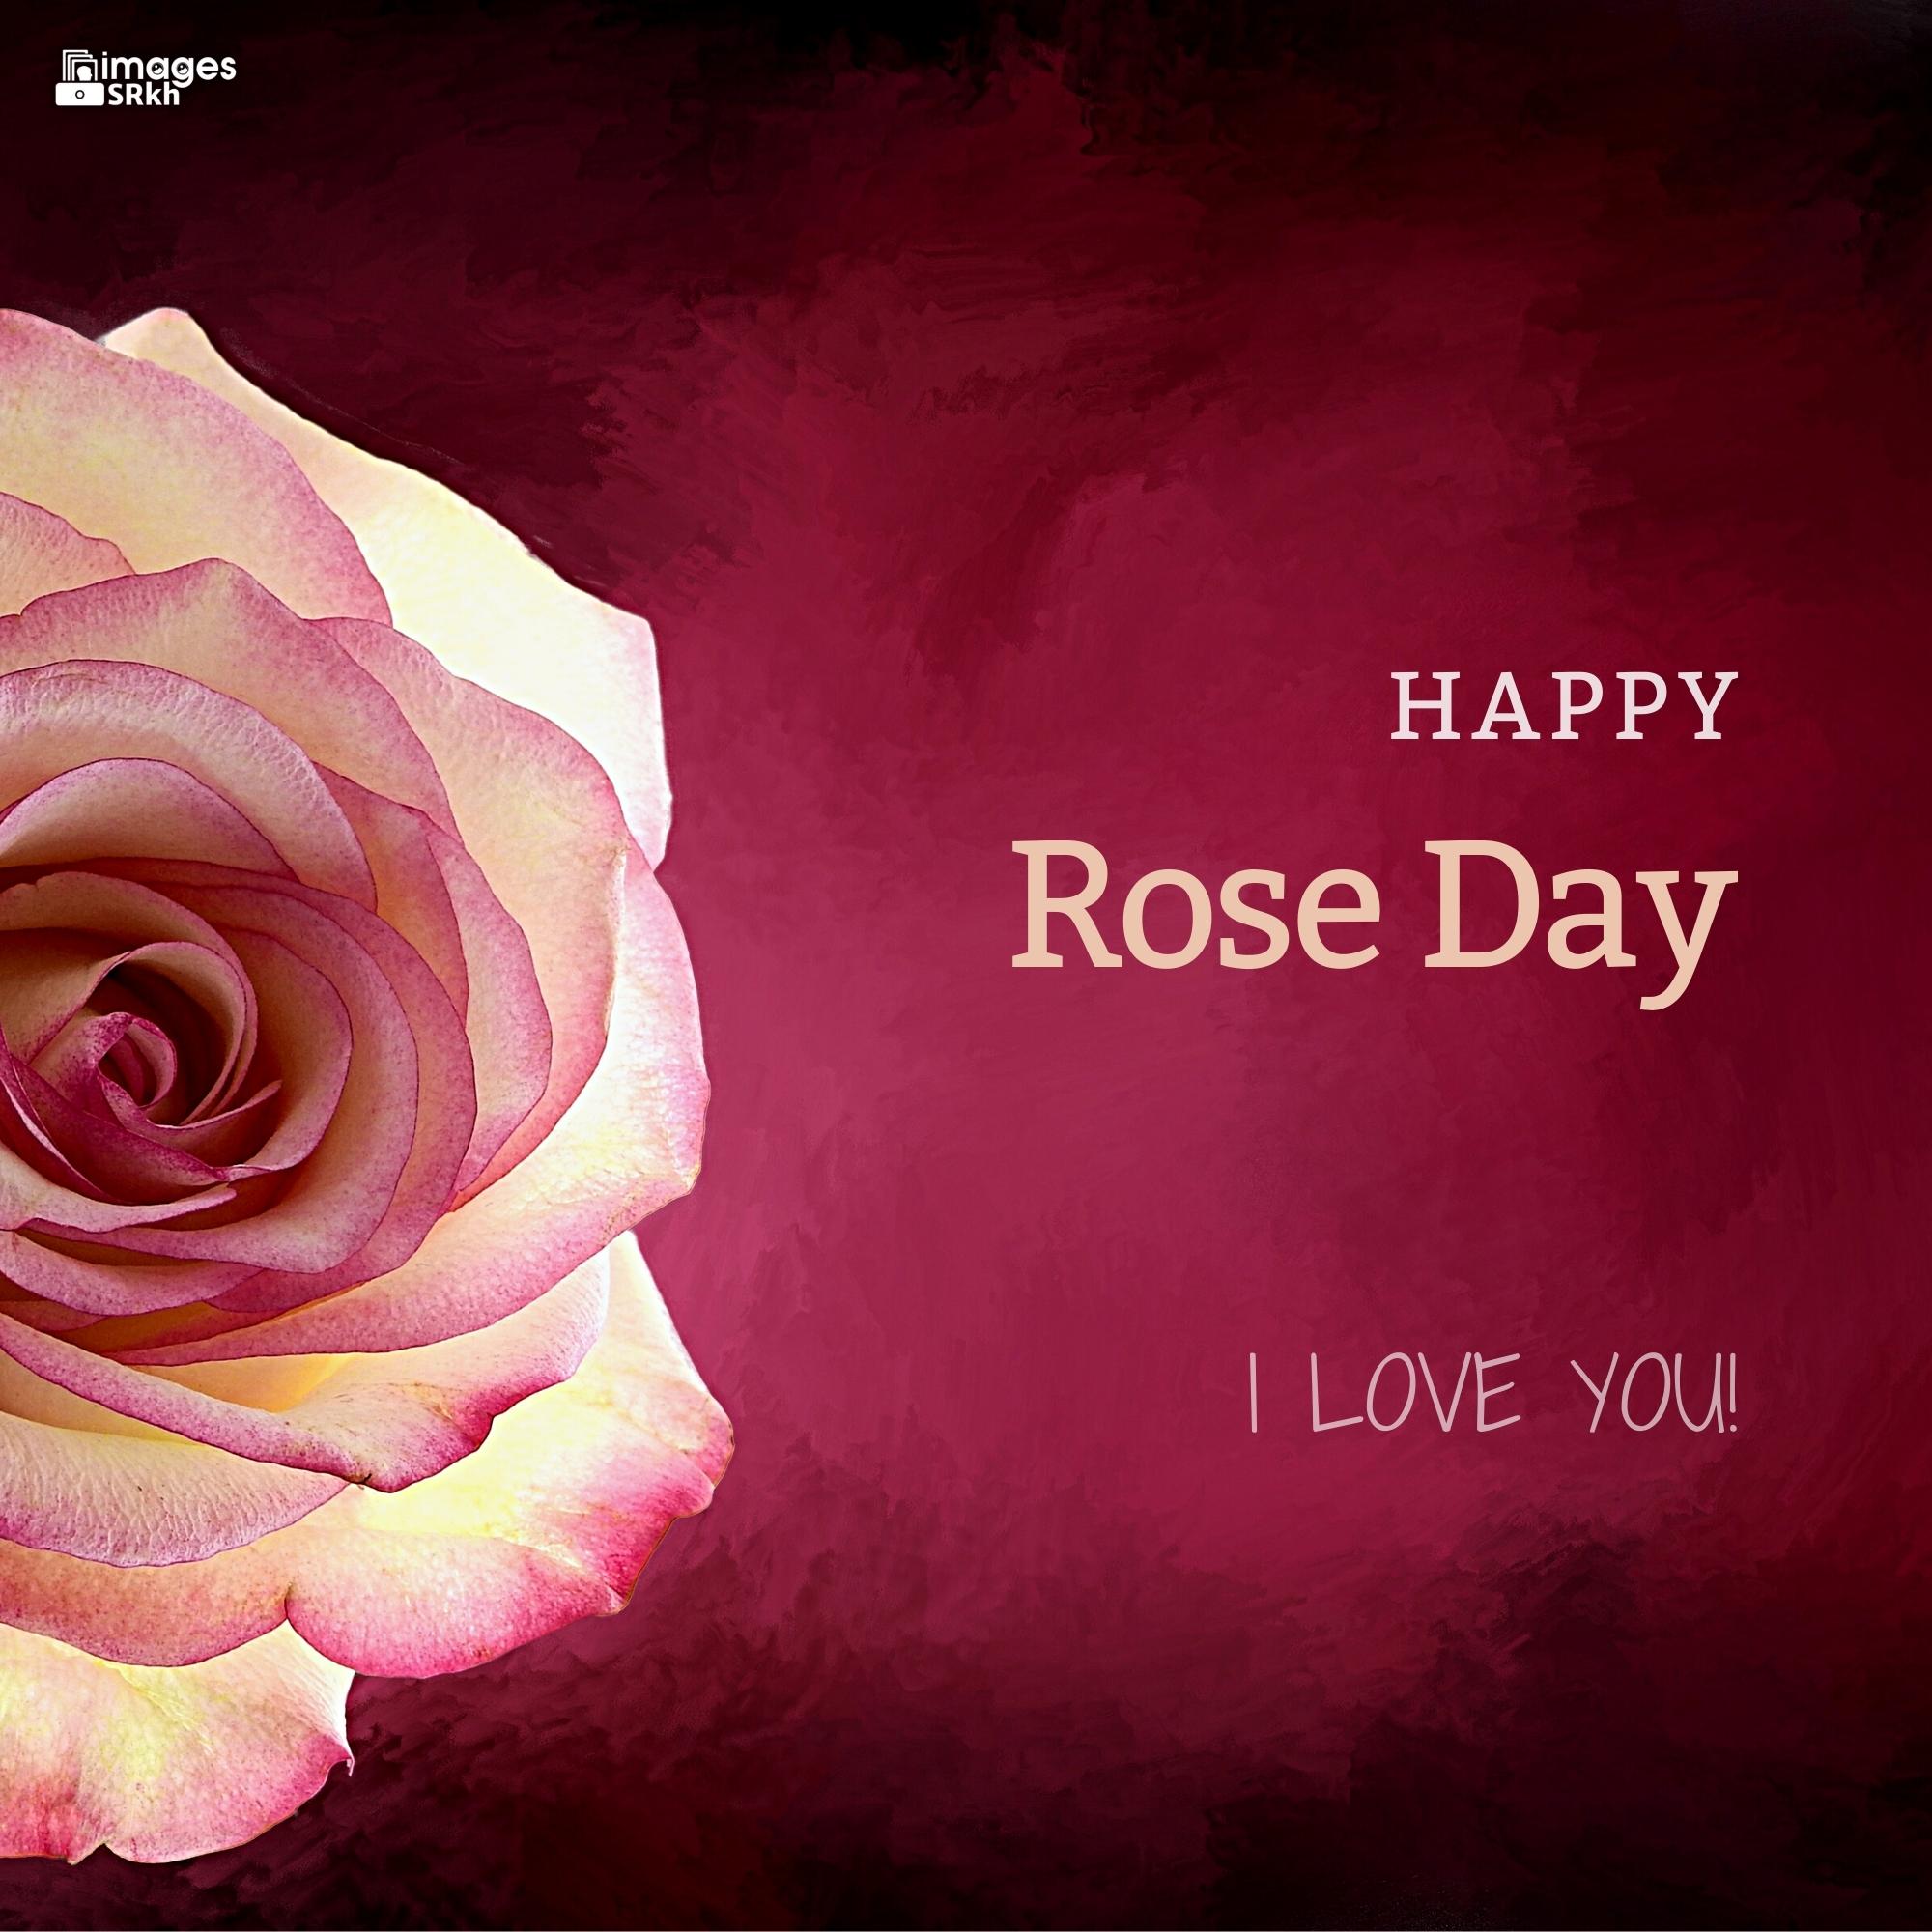 Rose Day Wishing Image Hd Download (2)